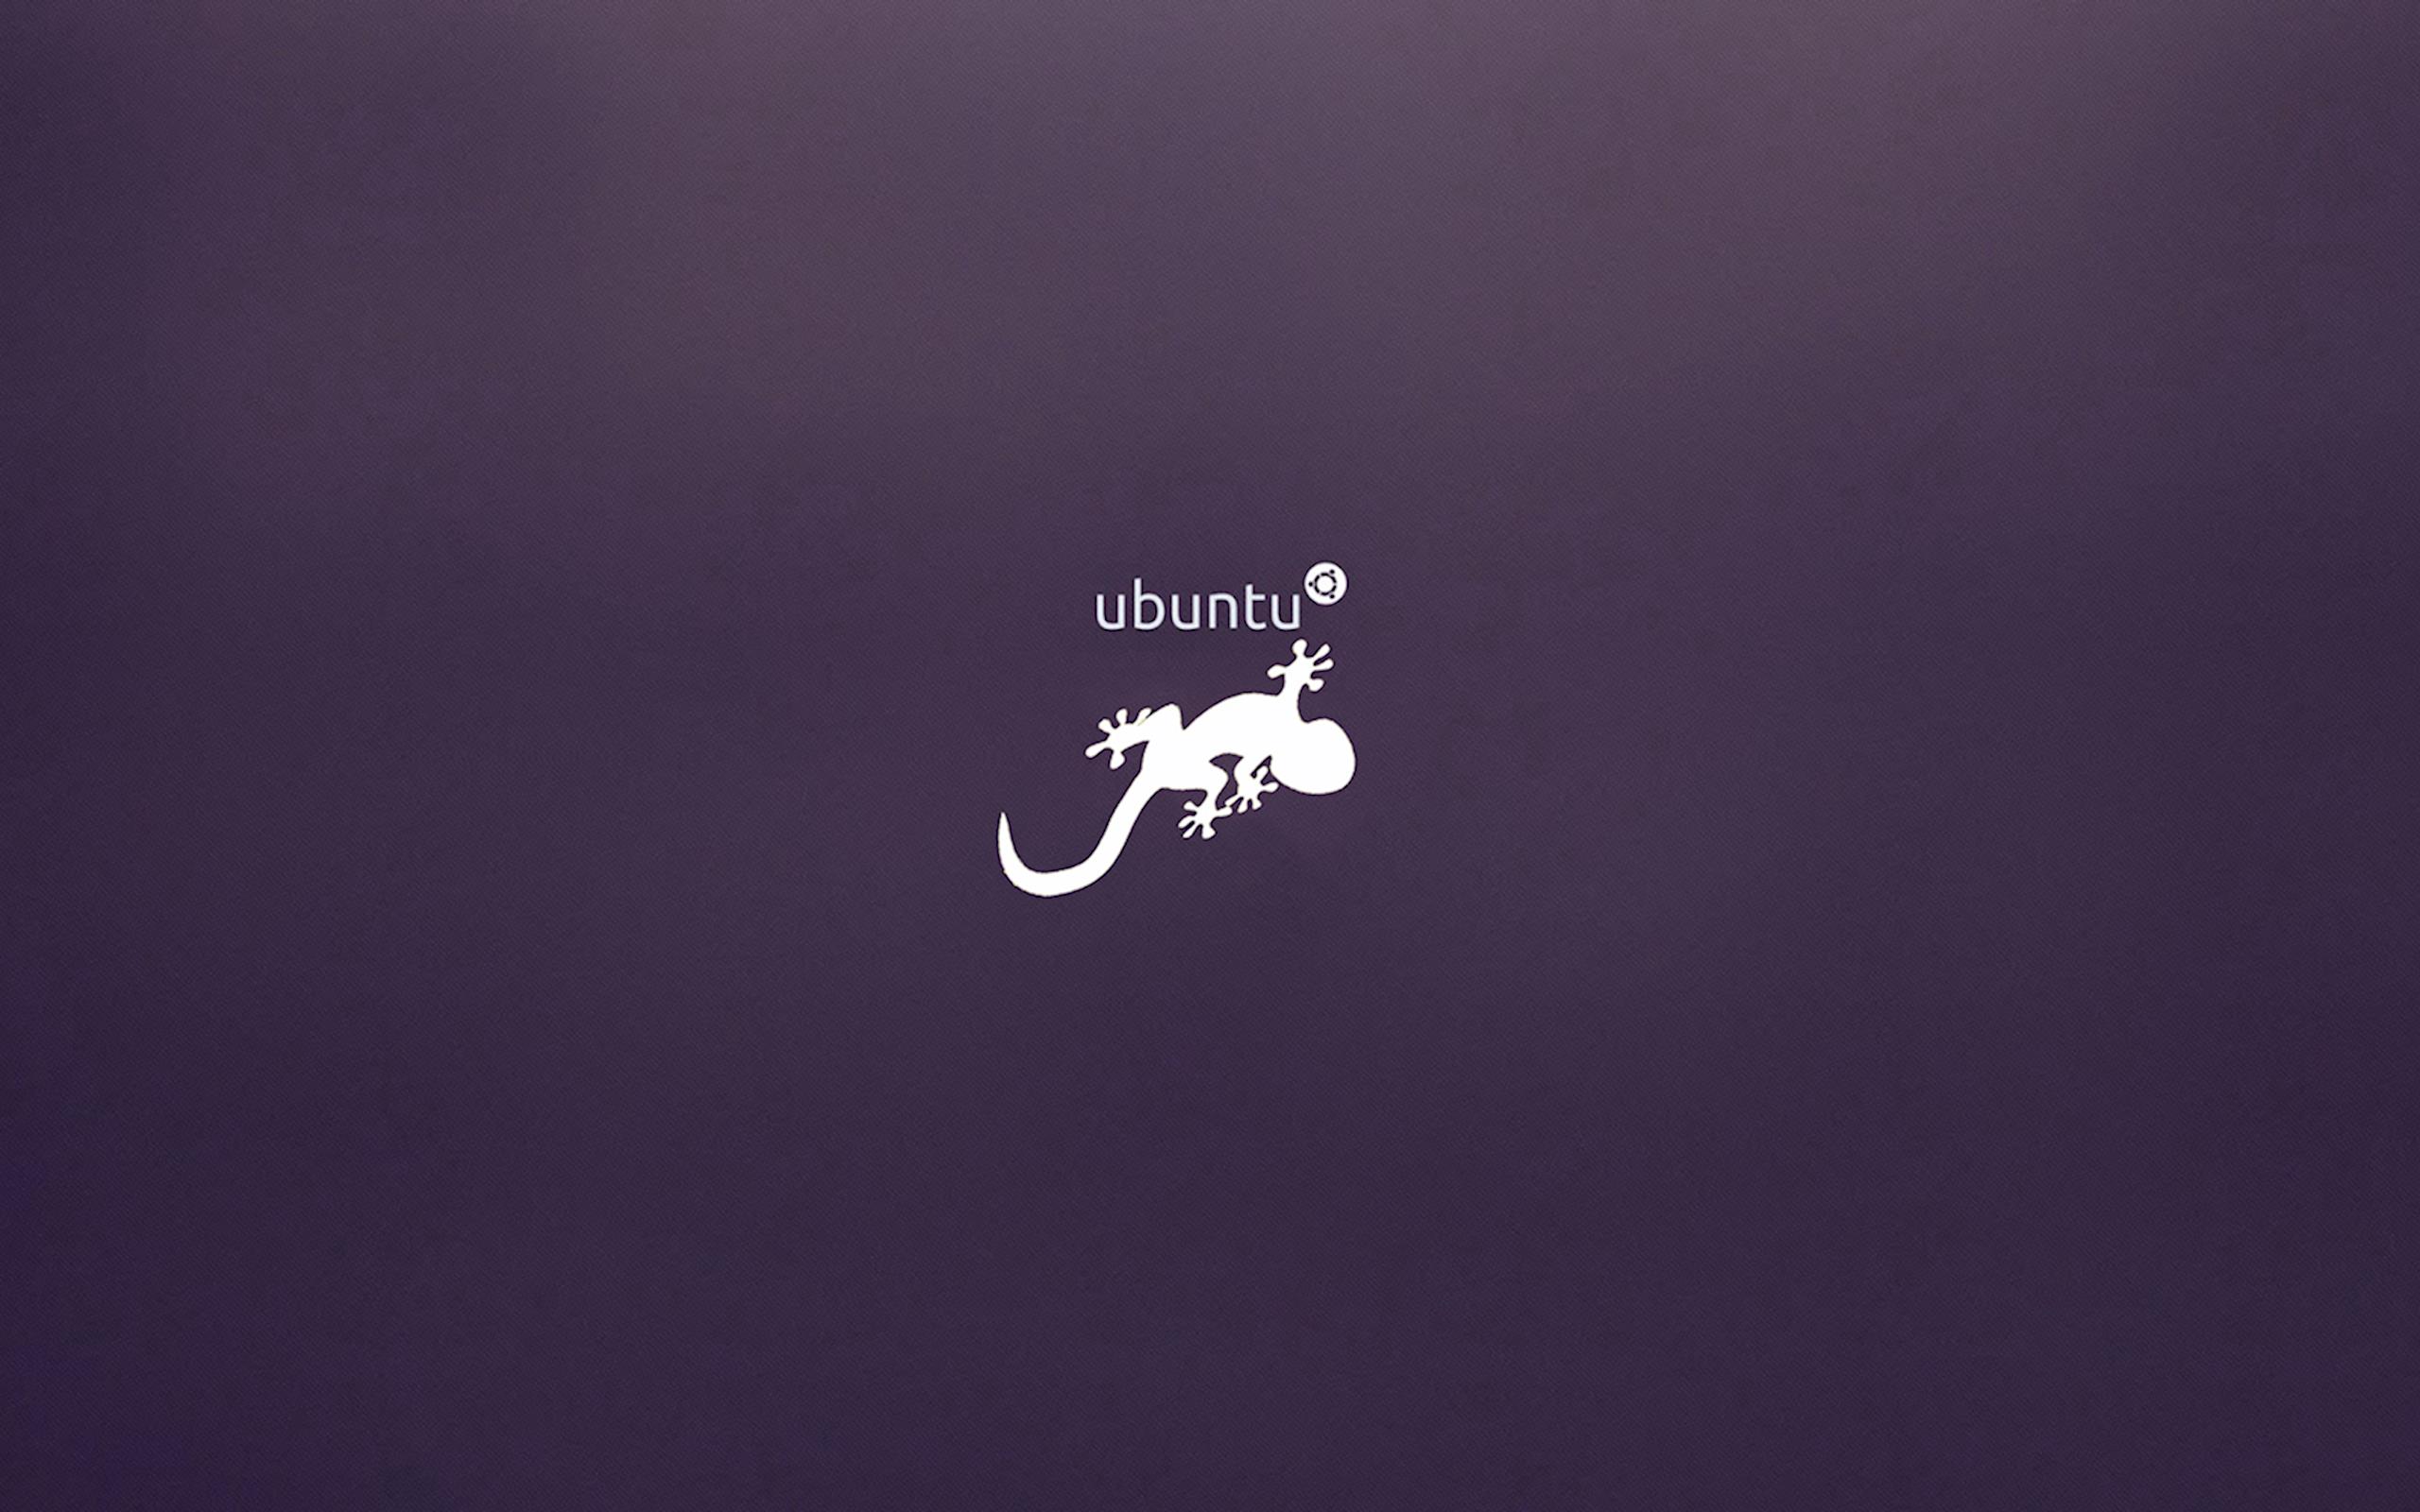 Ubuntu 13.10 Wallpaper. Mint Ubuntu Wallpaper, Ubuntu Wily Werewolf Wallpaper and Ubuntu Wallpaper